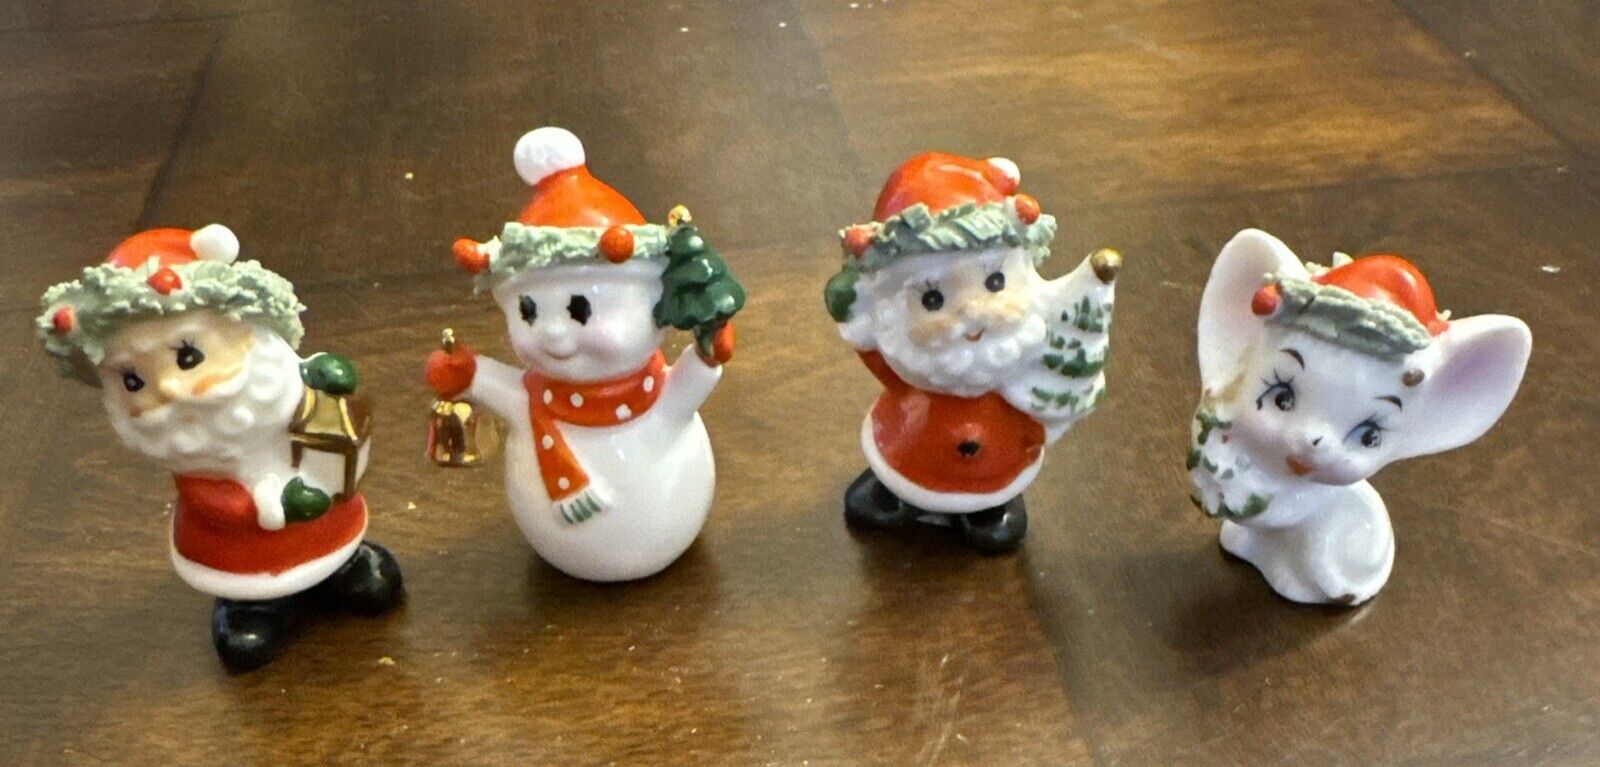 4 Vintage Ardco Porcelain Christmas Figurines 2 Santas Snowman Mouse Unique 